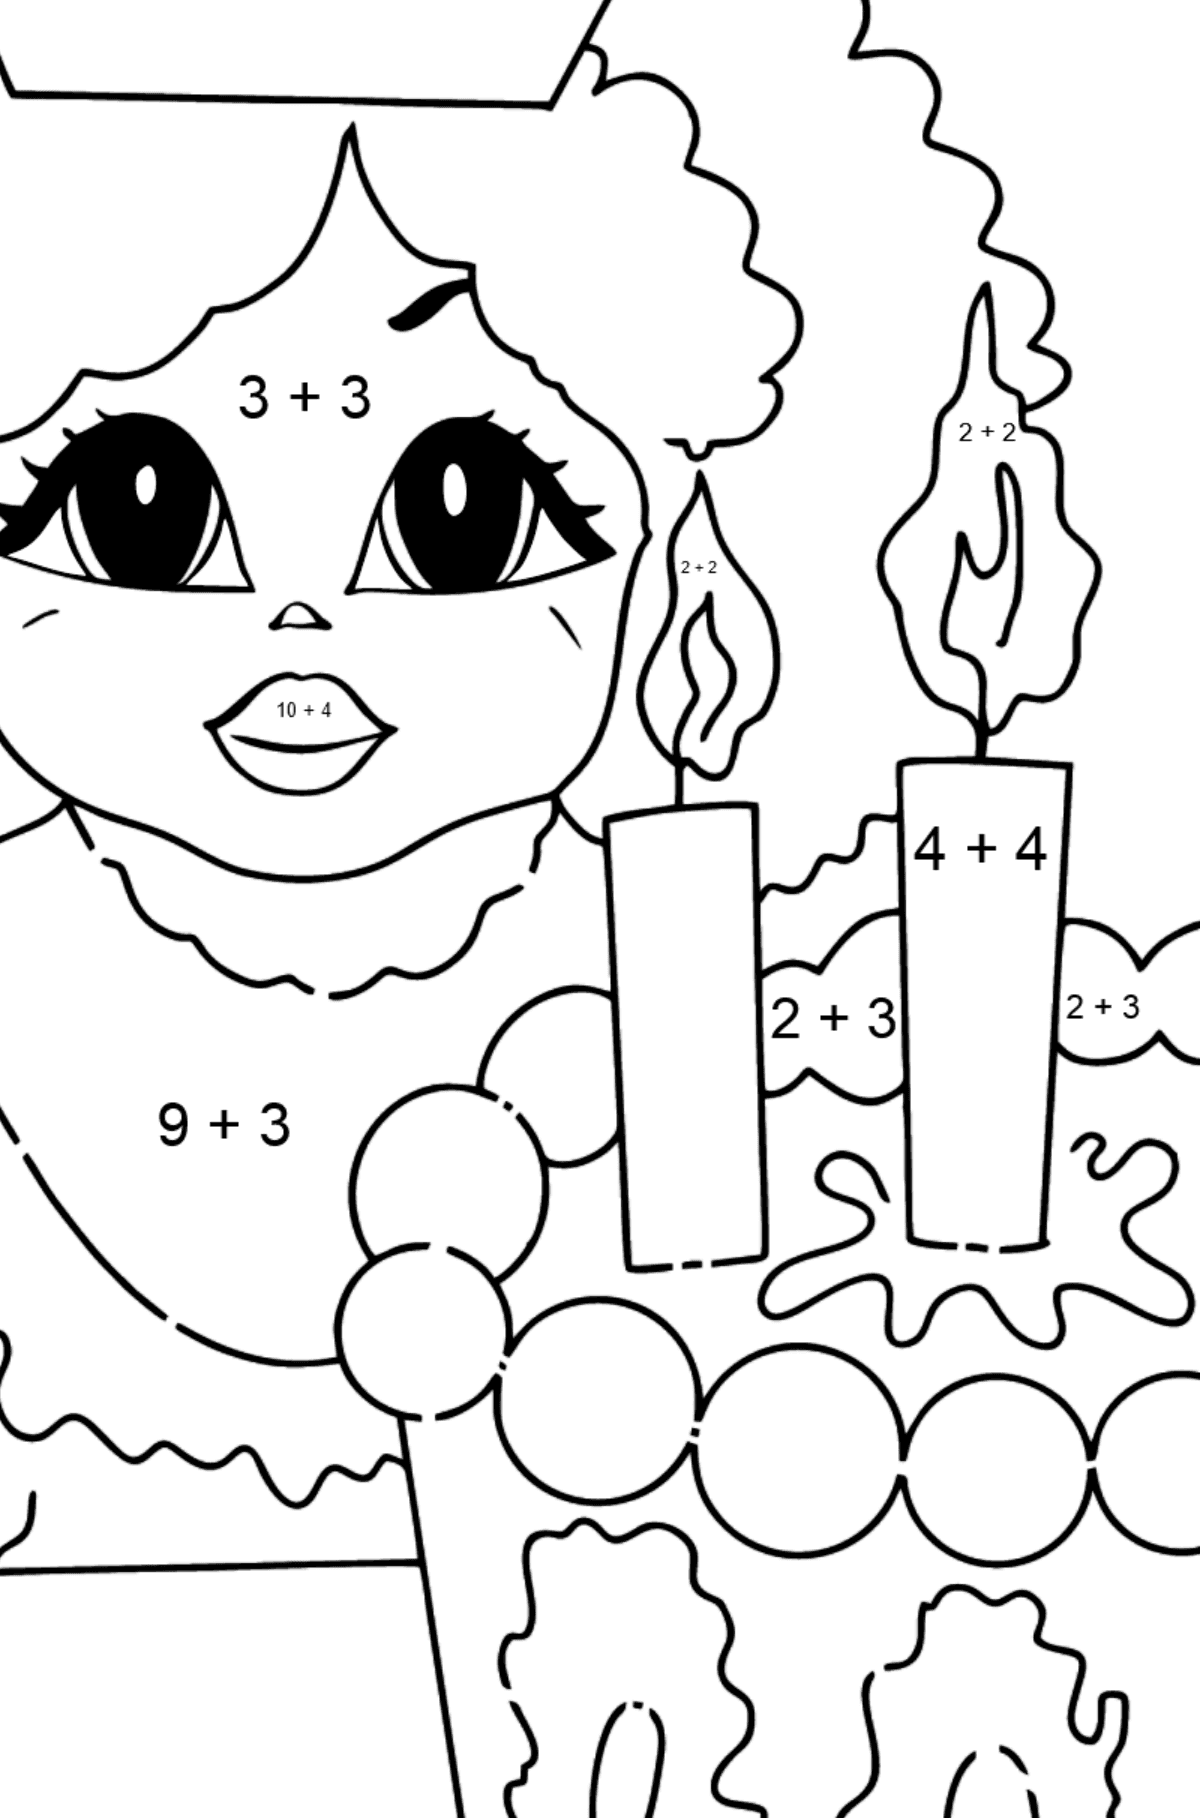 Principessa da colorare semplice e divertente - Colorazione matematica - Addizione per bambini